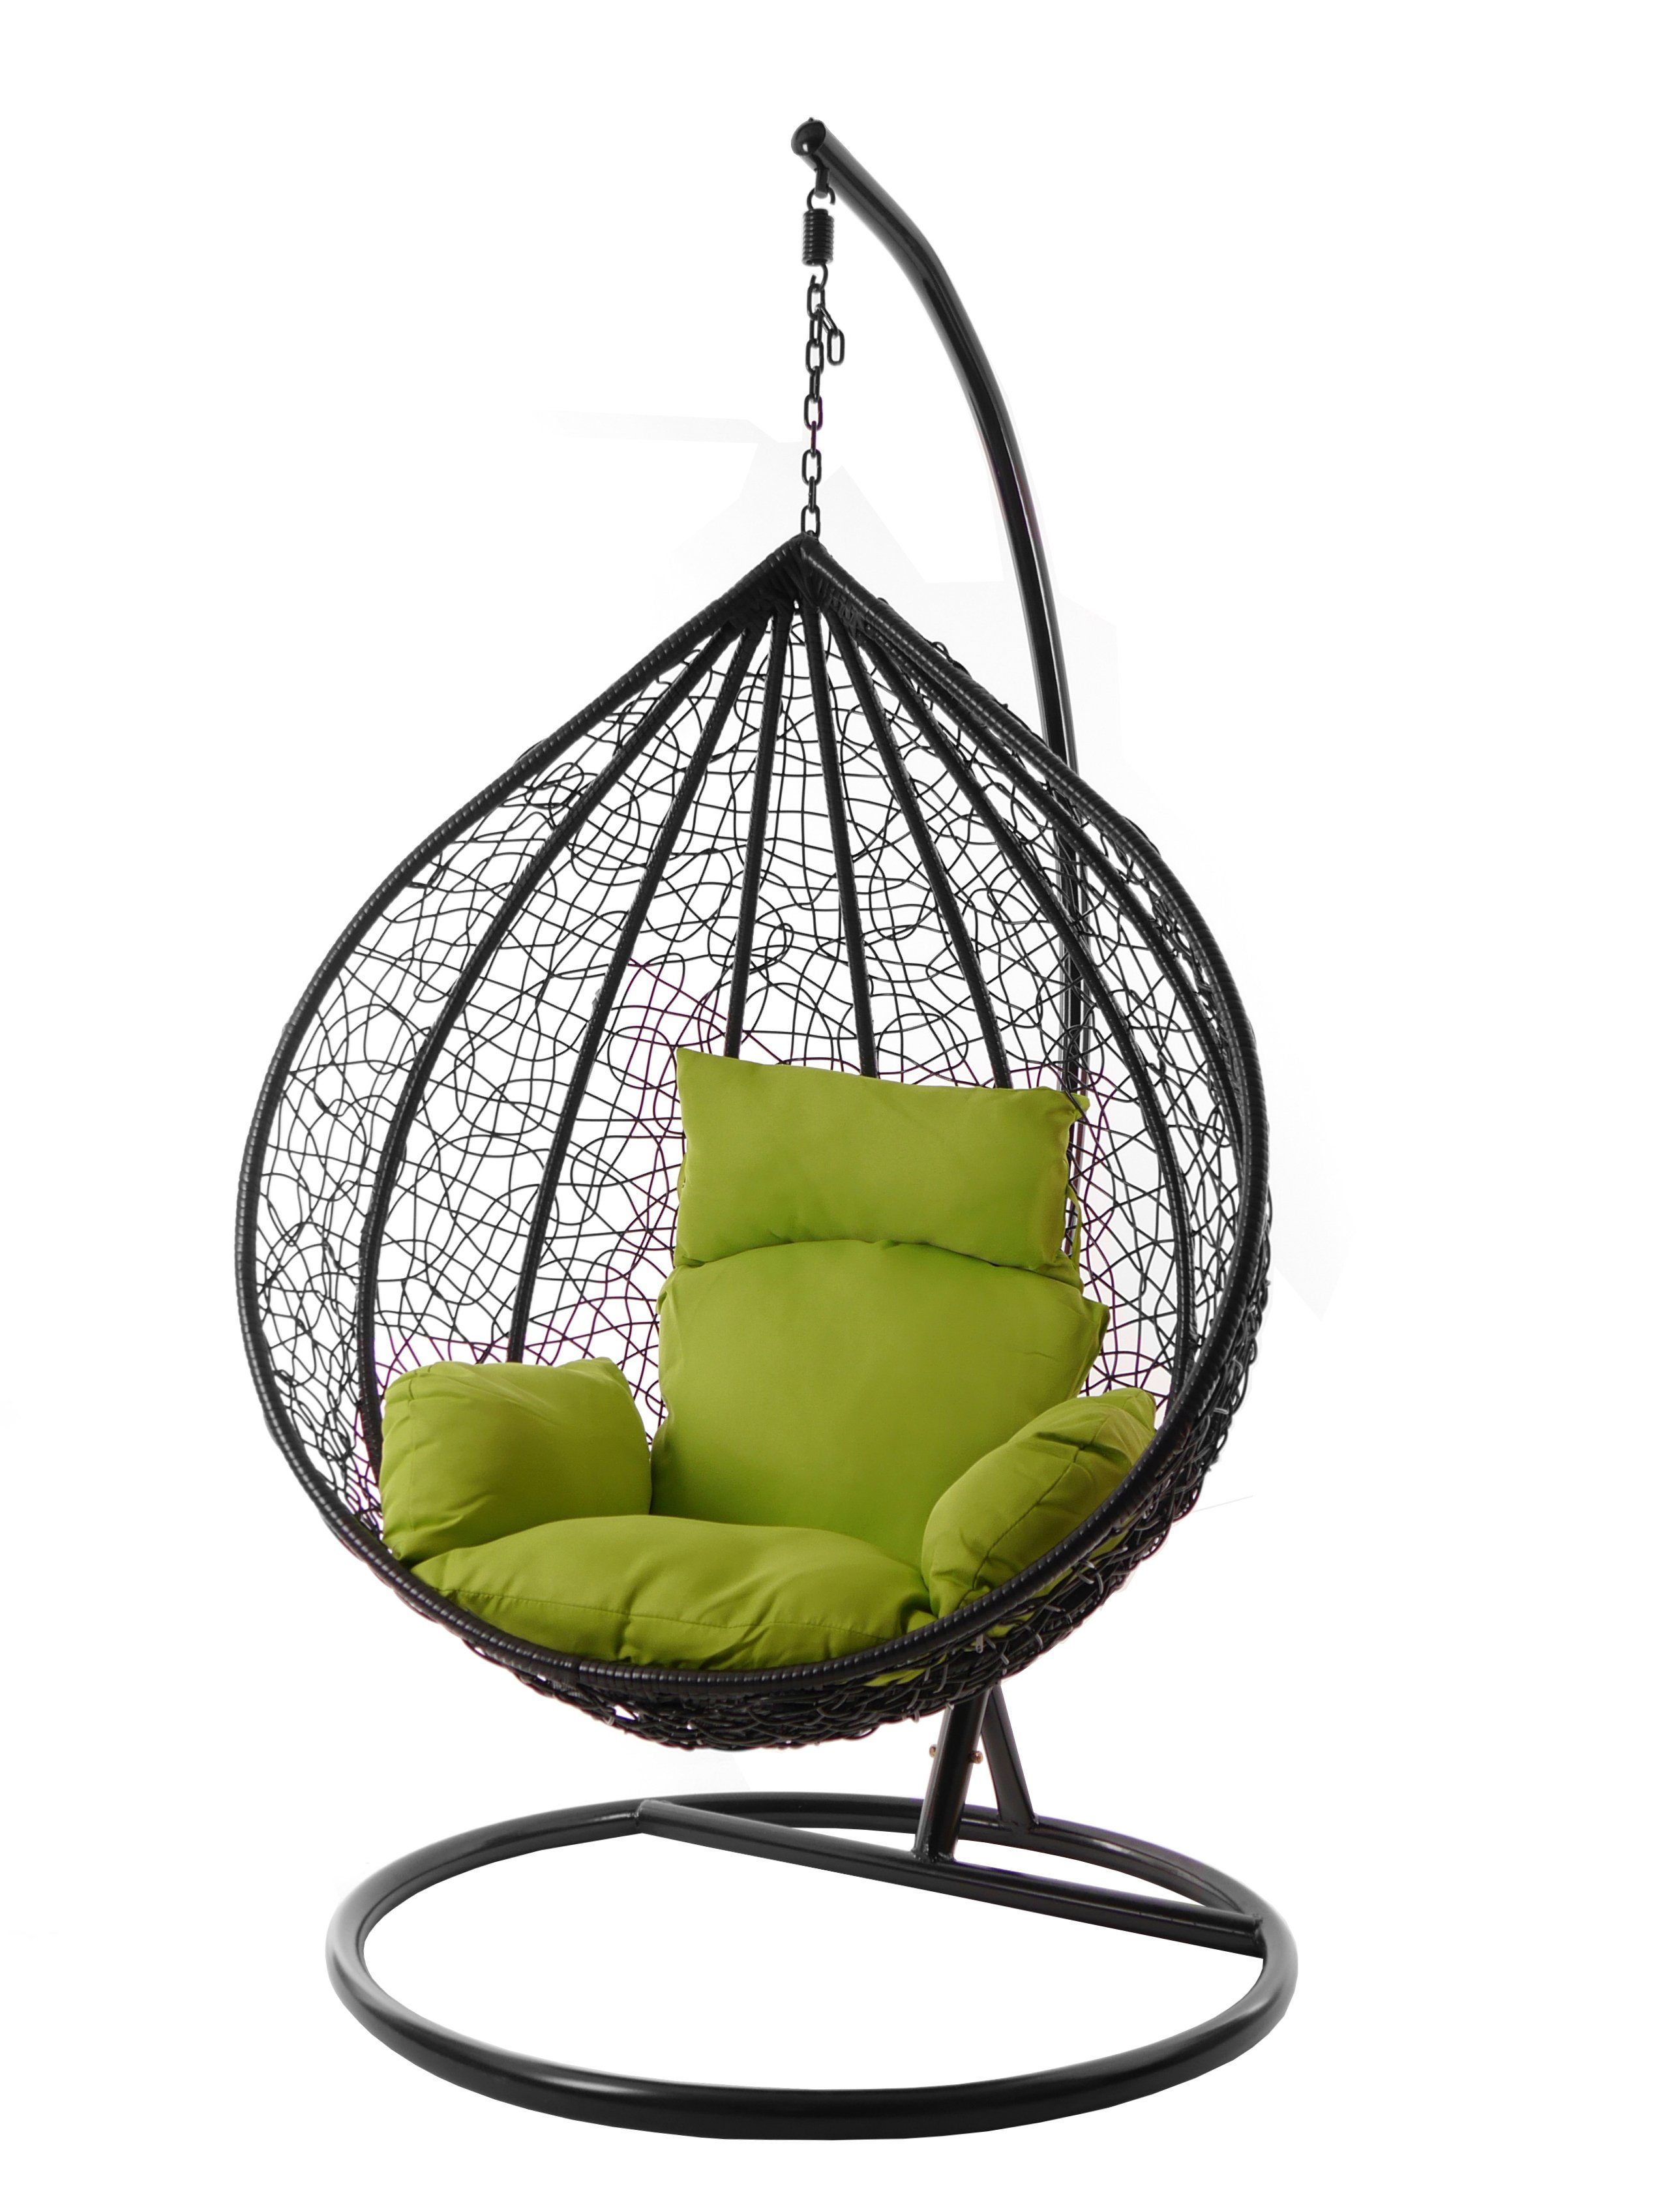 KIDEO Hängesessel Hängesessel und edel, green) Nest-Kissen, MANACOR (6068 Chair, XXL schwarz, apfelgrün Gestell inklusive, Farben verschiedene apple Swing Kissen